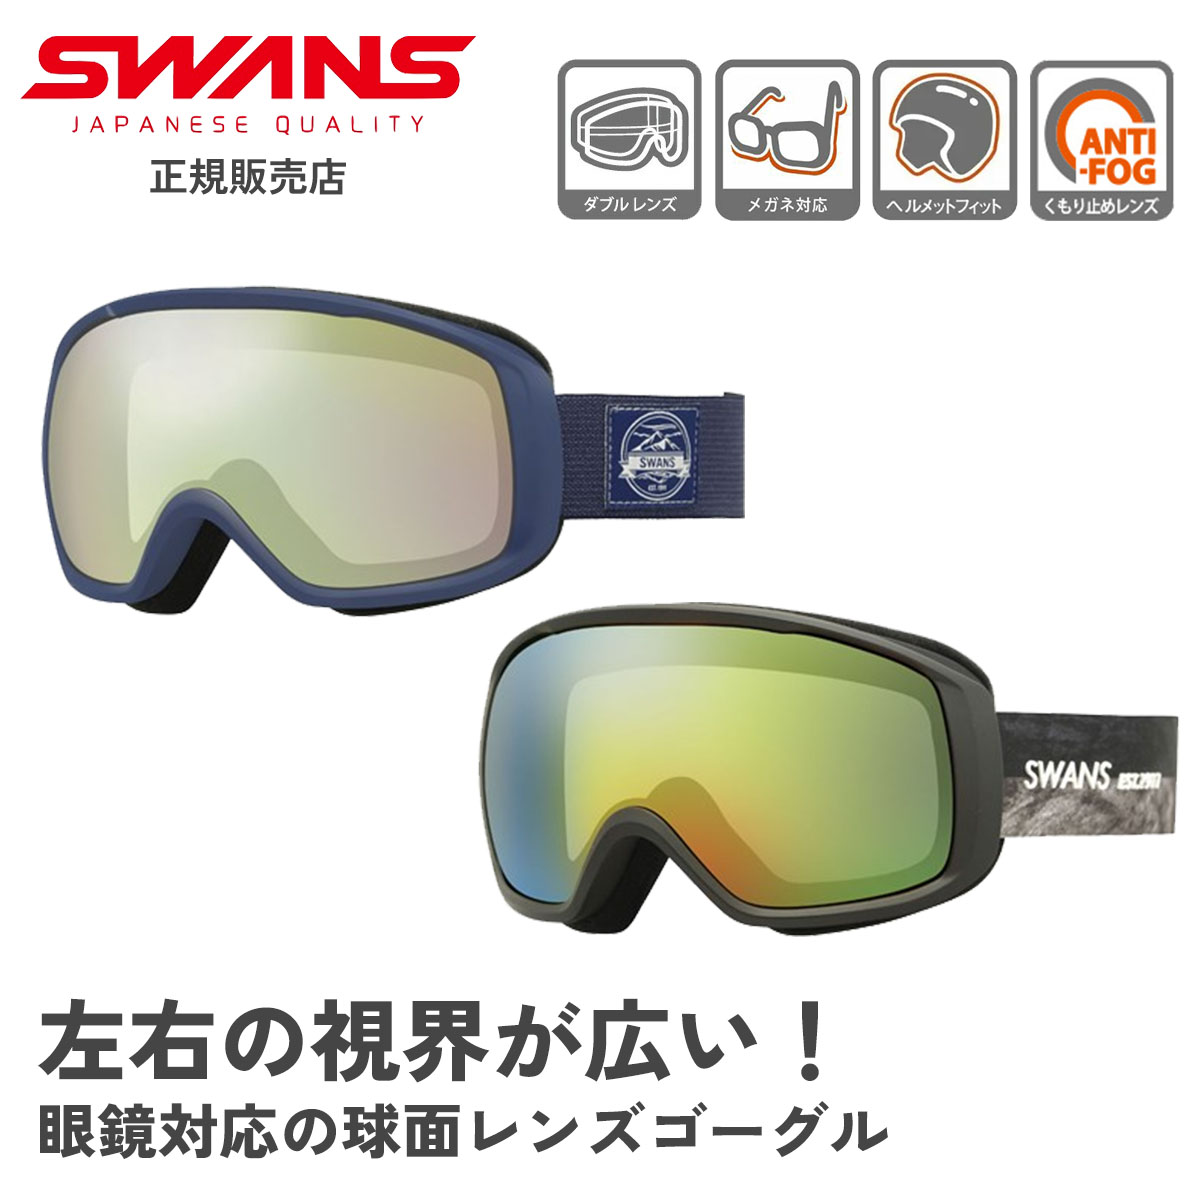 SWANS スワンズ スキー スノーボード ゴーグル スノボ スノーゴーグル メンズ レディース あす楽対応 ダブルレンズ 眼鏡対応 ミラー スノボー くもり止め スキーゴーグル スノーボードゴーグル ユニセックス 200-MDHS